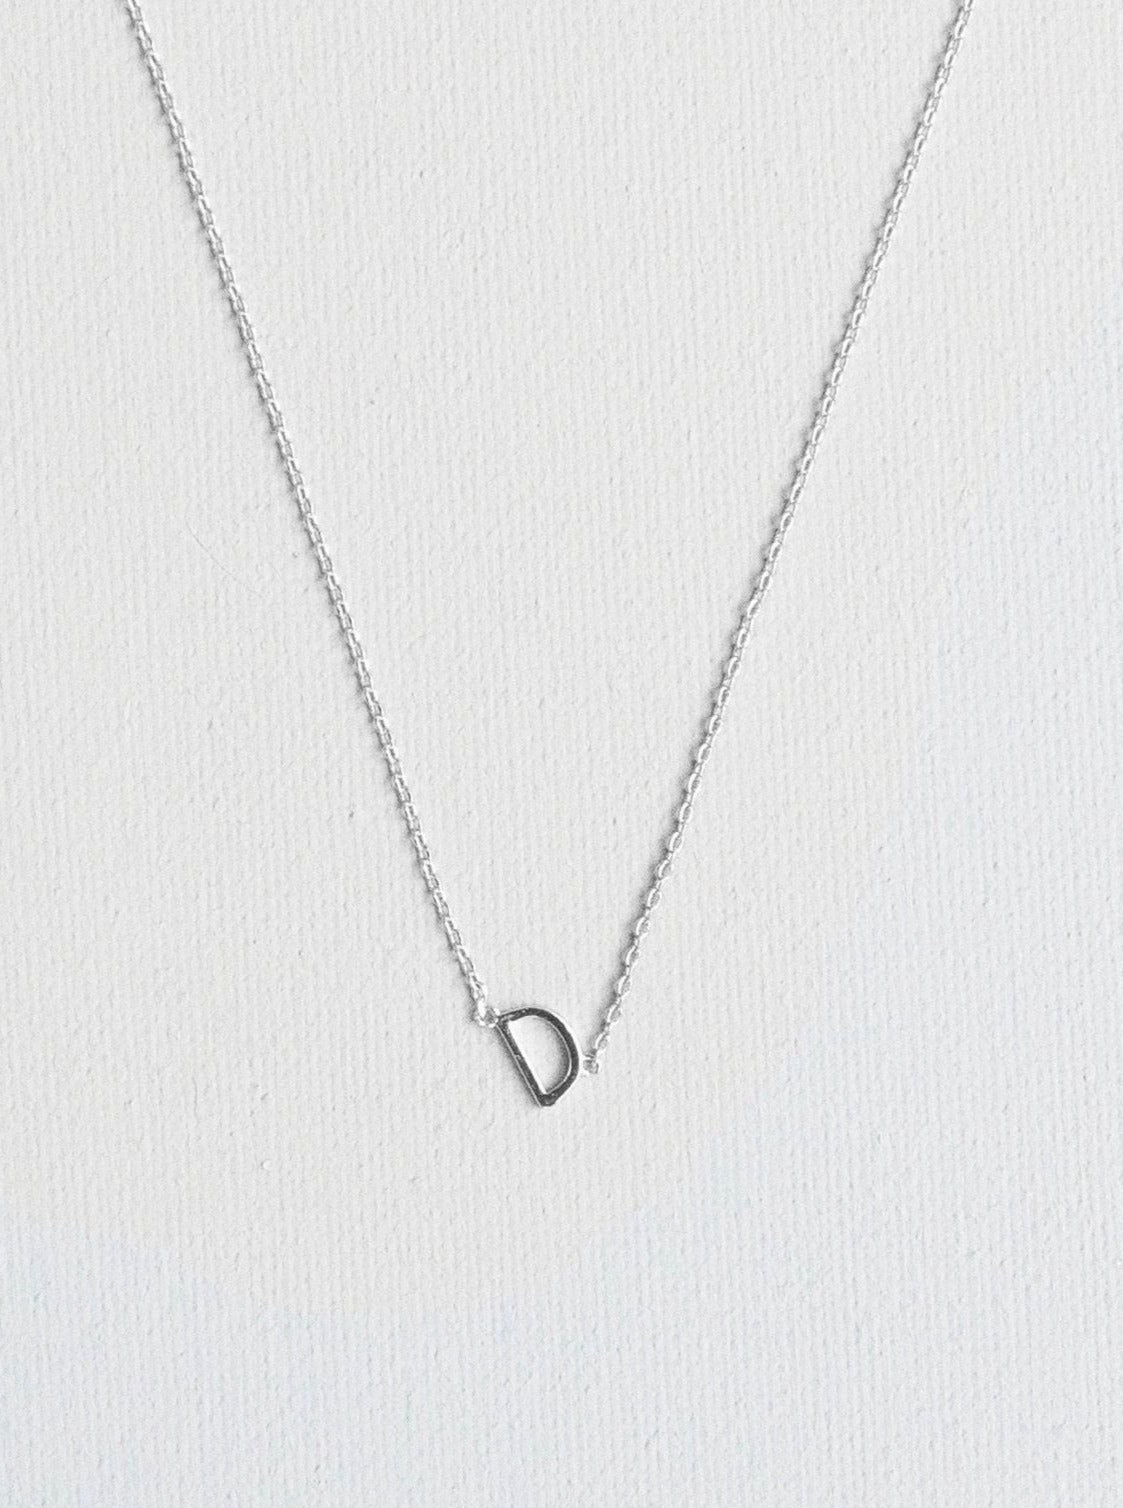 D letter necklace